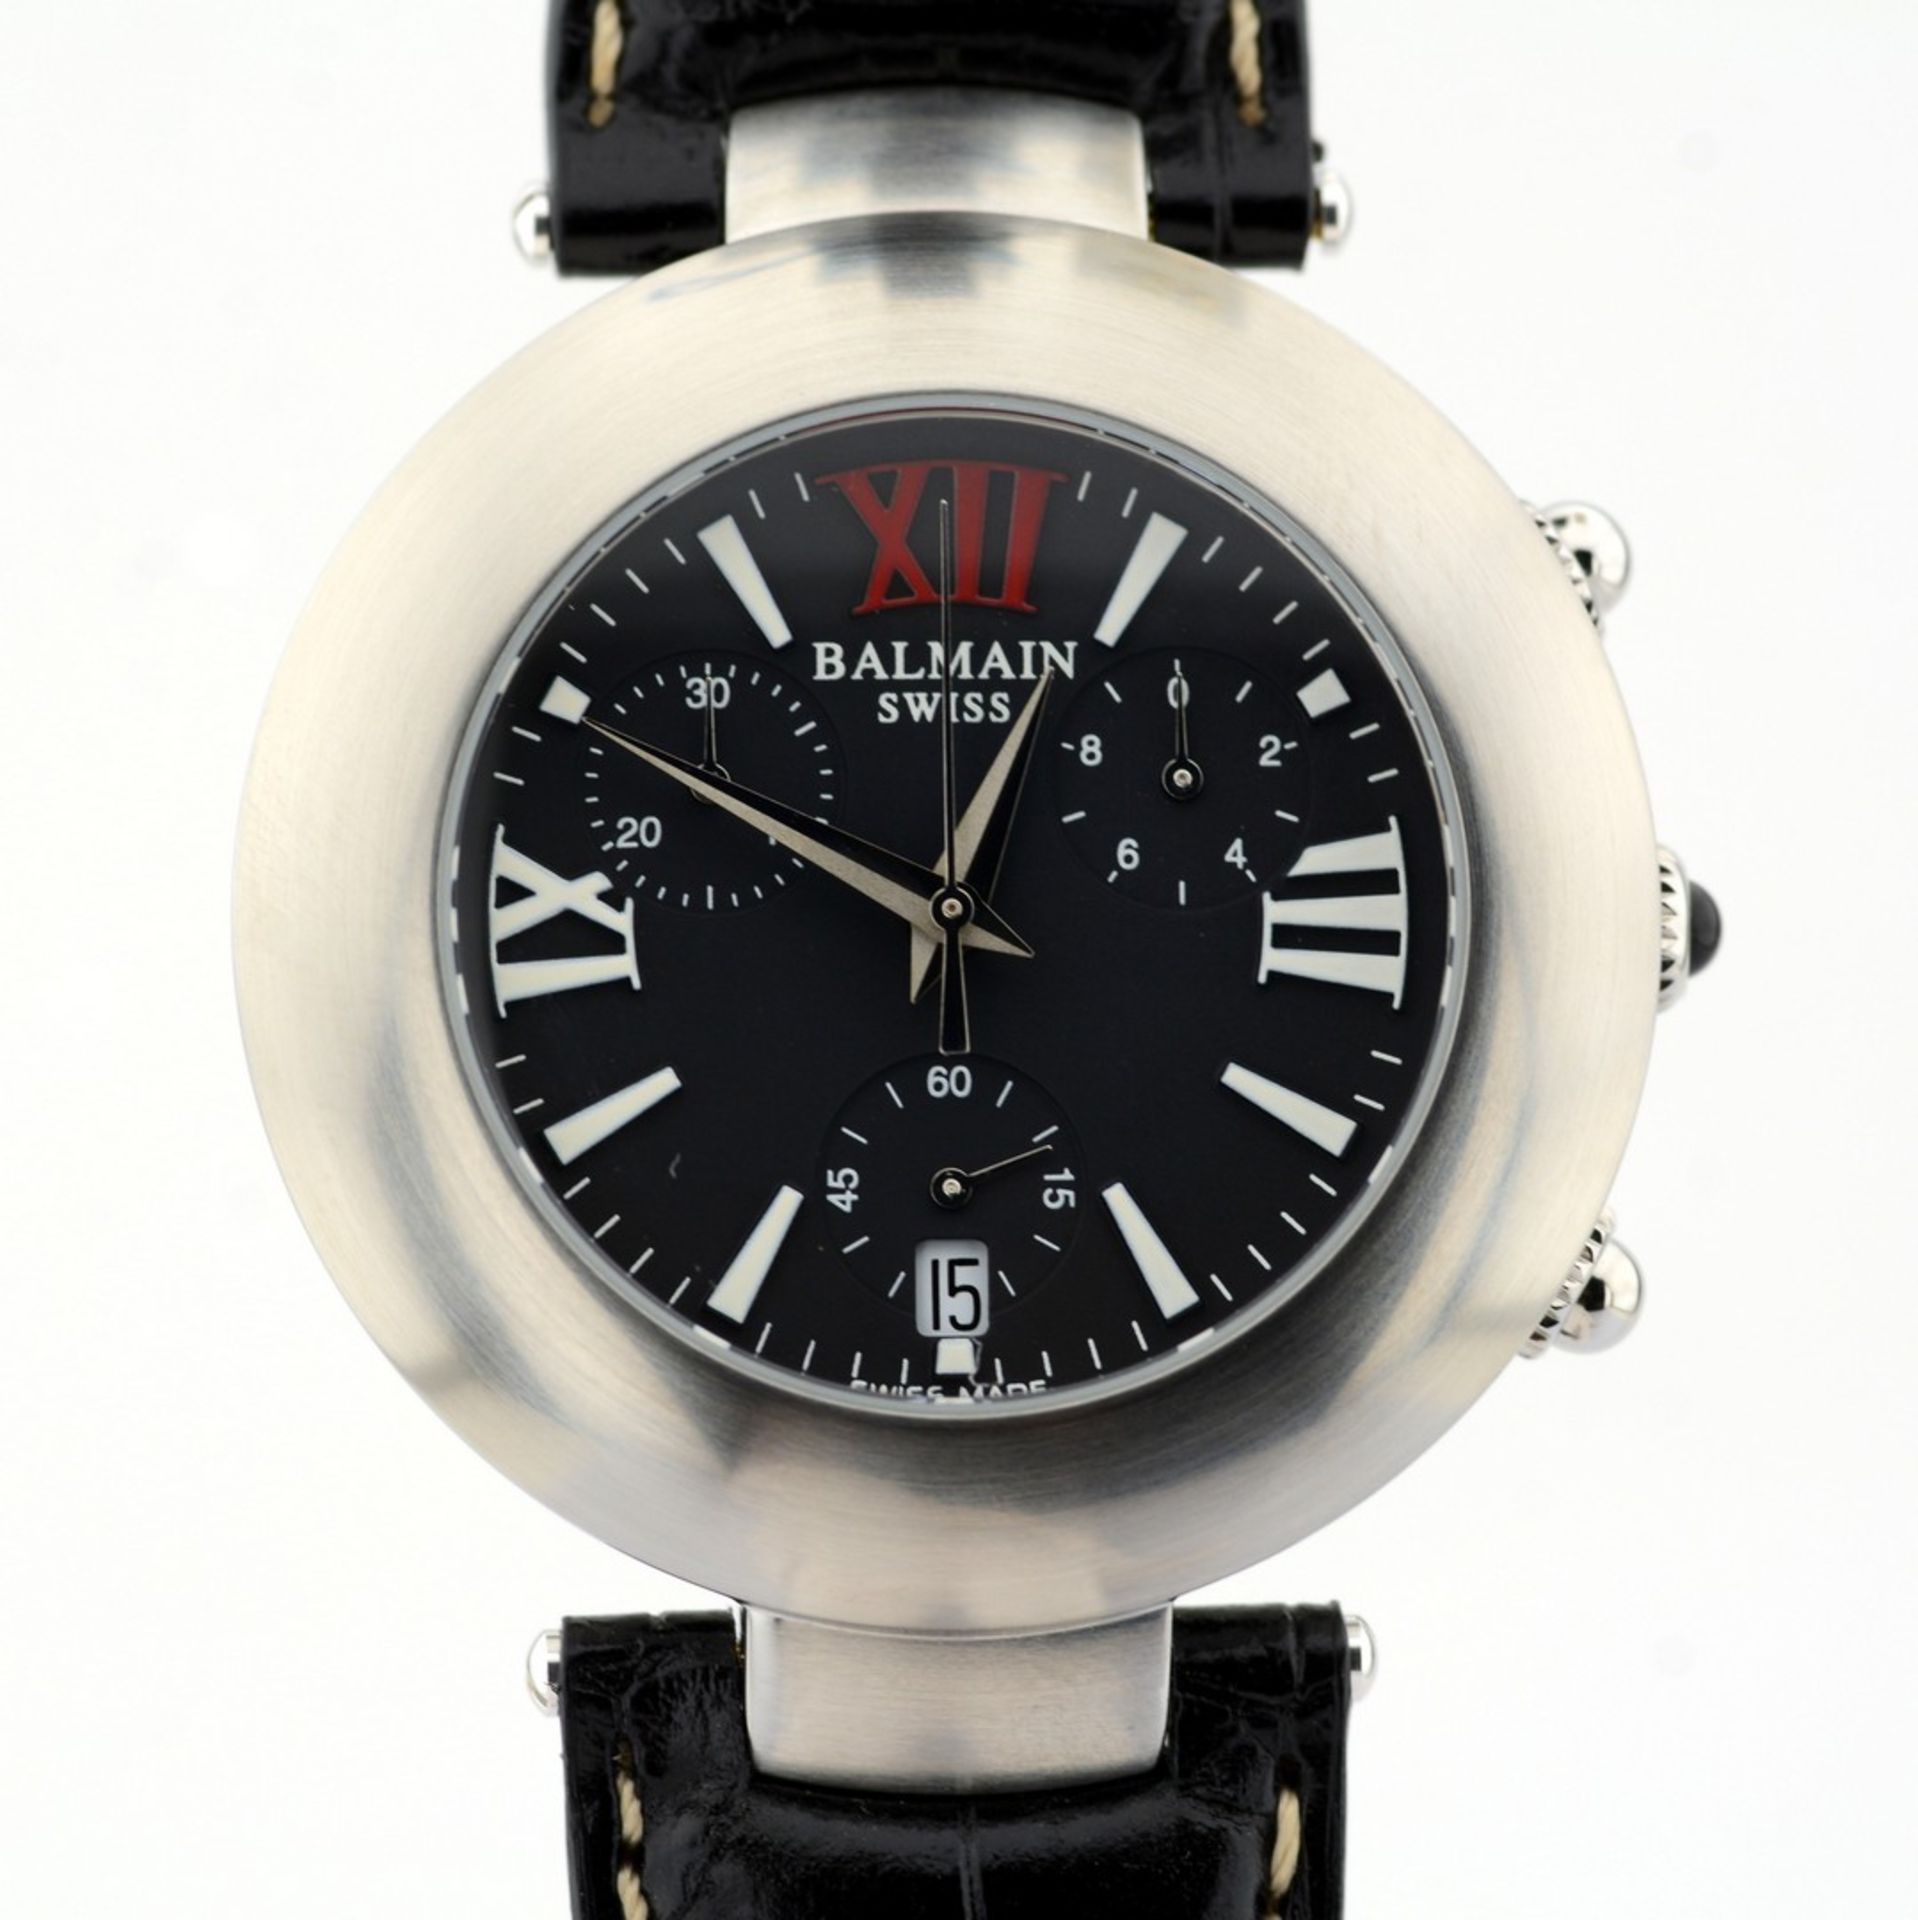 Pierre Balmain / Swiss Chronograph Date - Gentlmen's Steel Wrist Watch